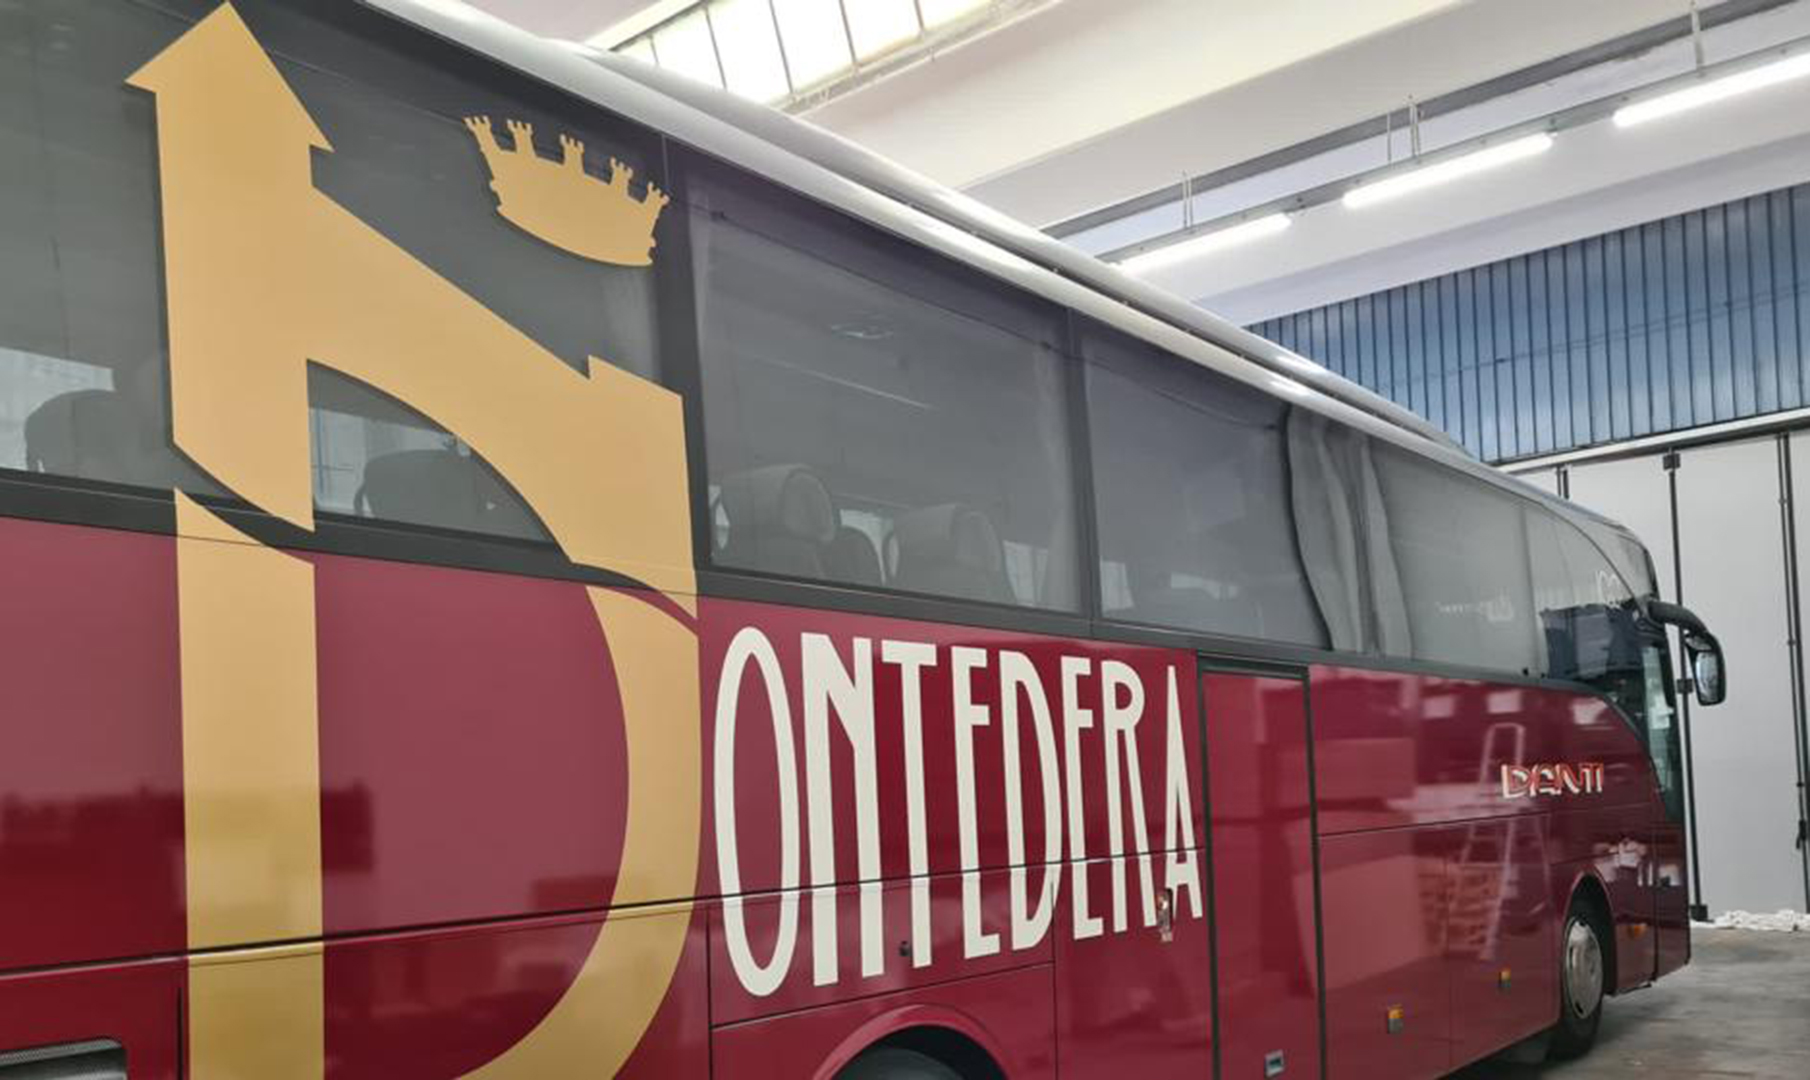 Habillage total d’un bus pour l’équipe de football de Pontedera (Italie) grâce à un film 3D spécifique.